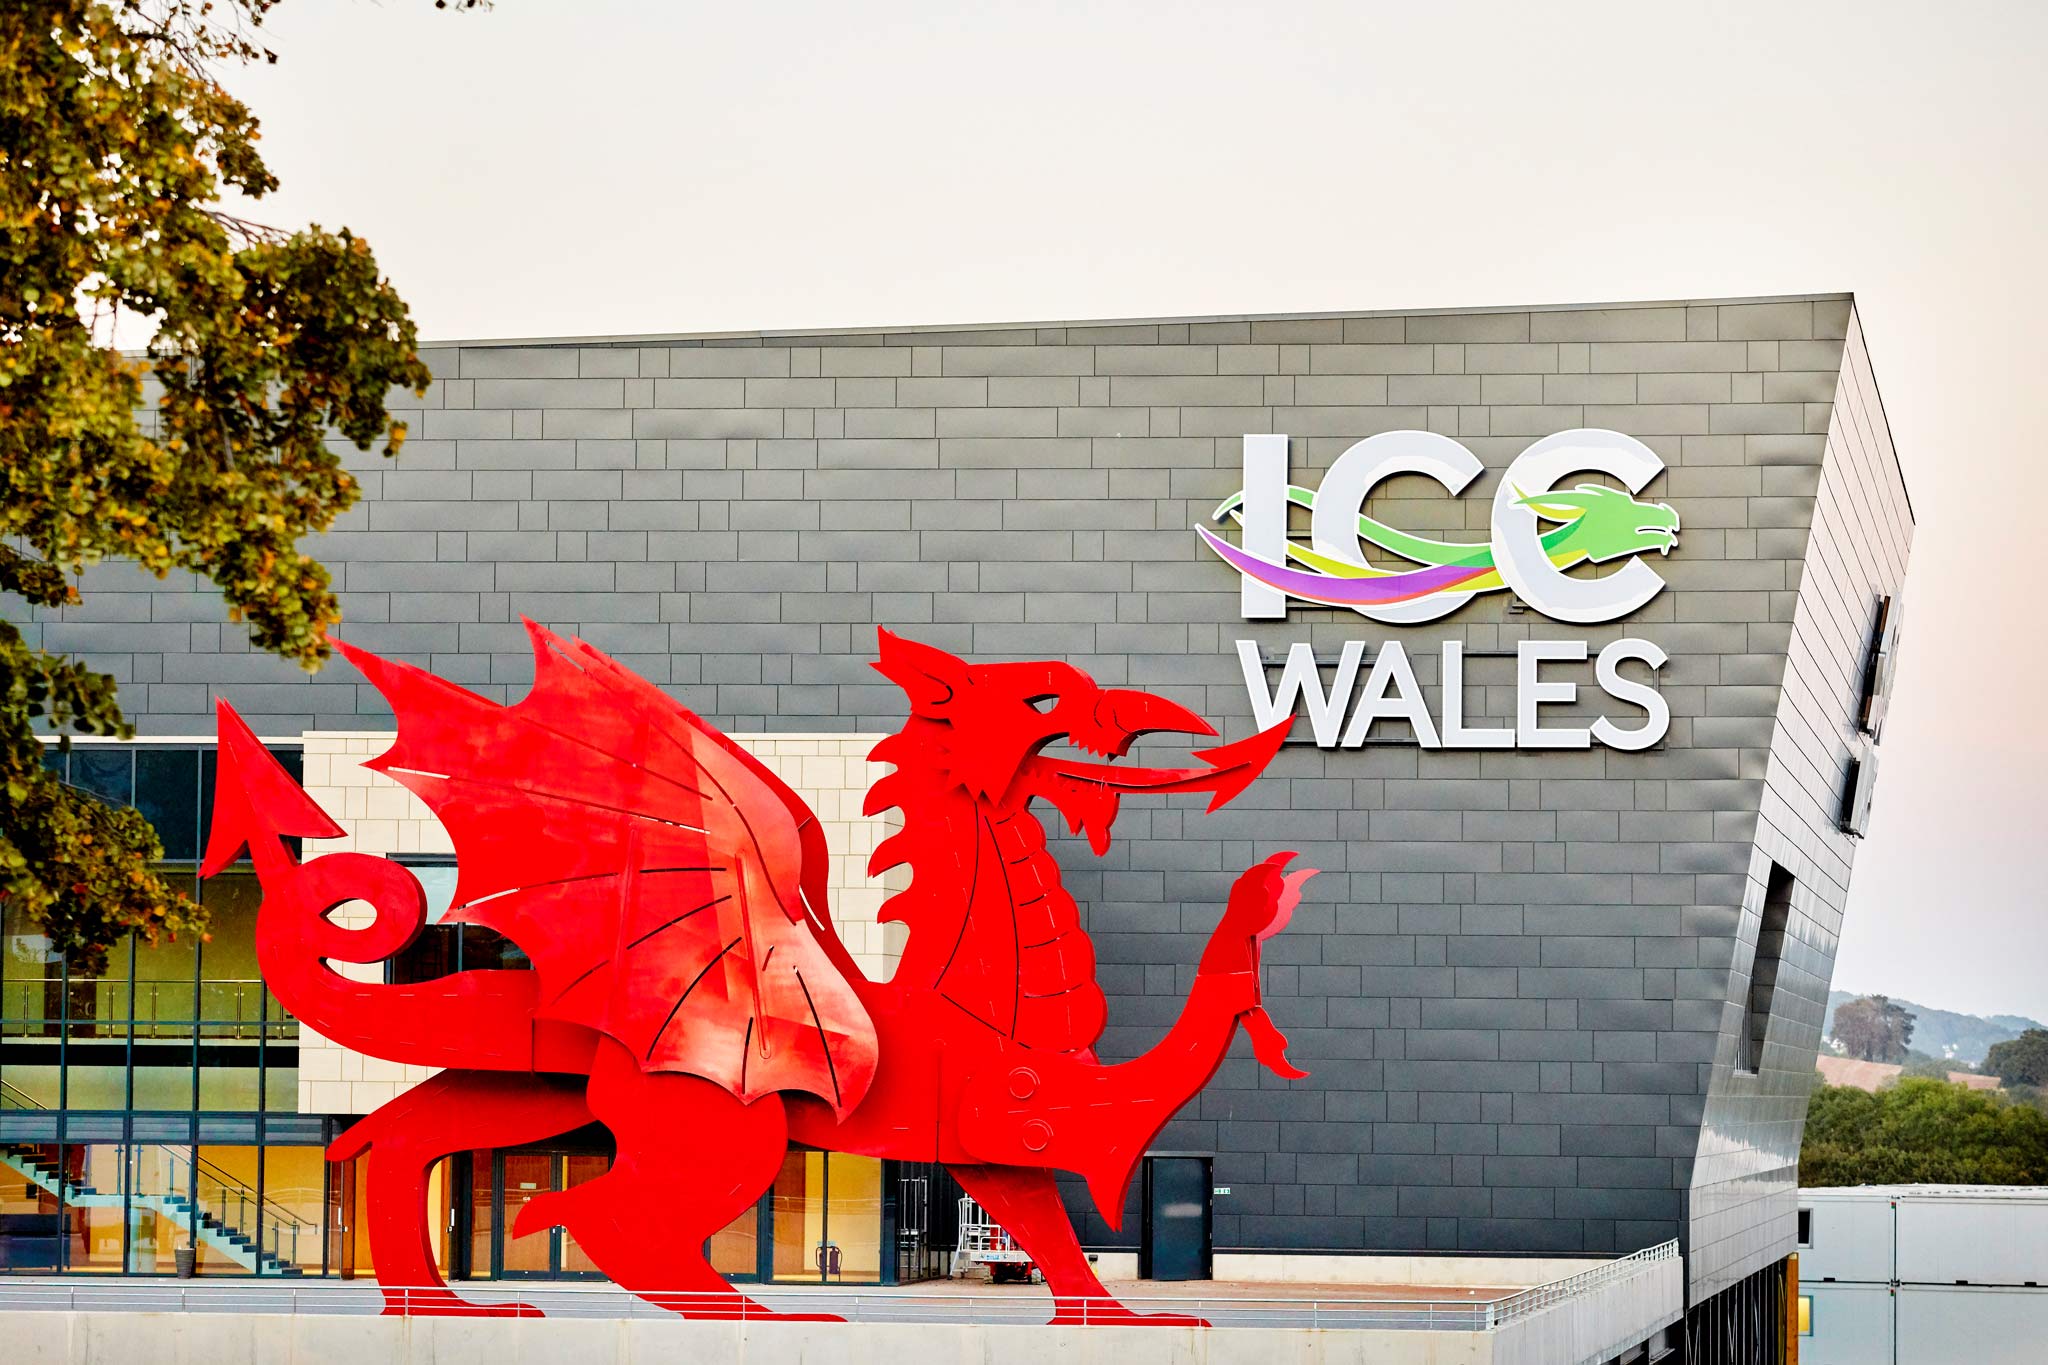 ICC Wales. Photo: Oliver Edwards